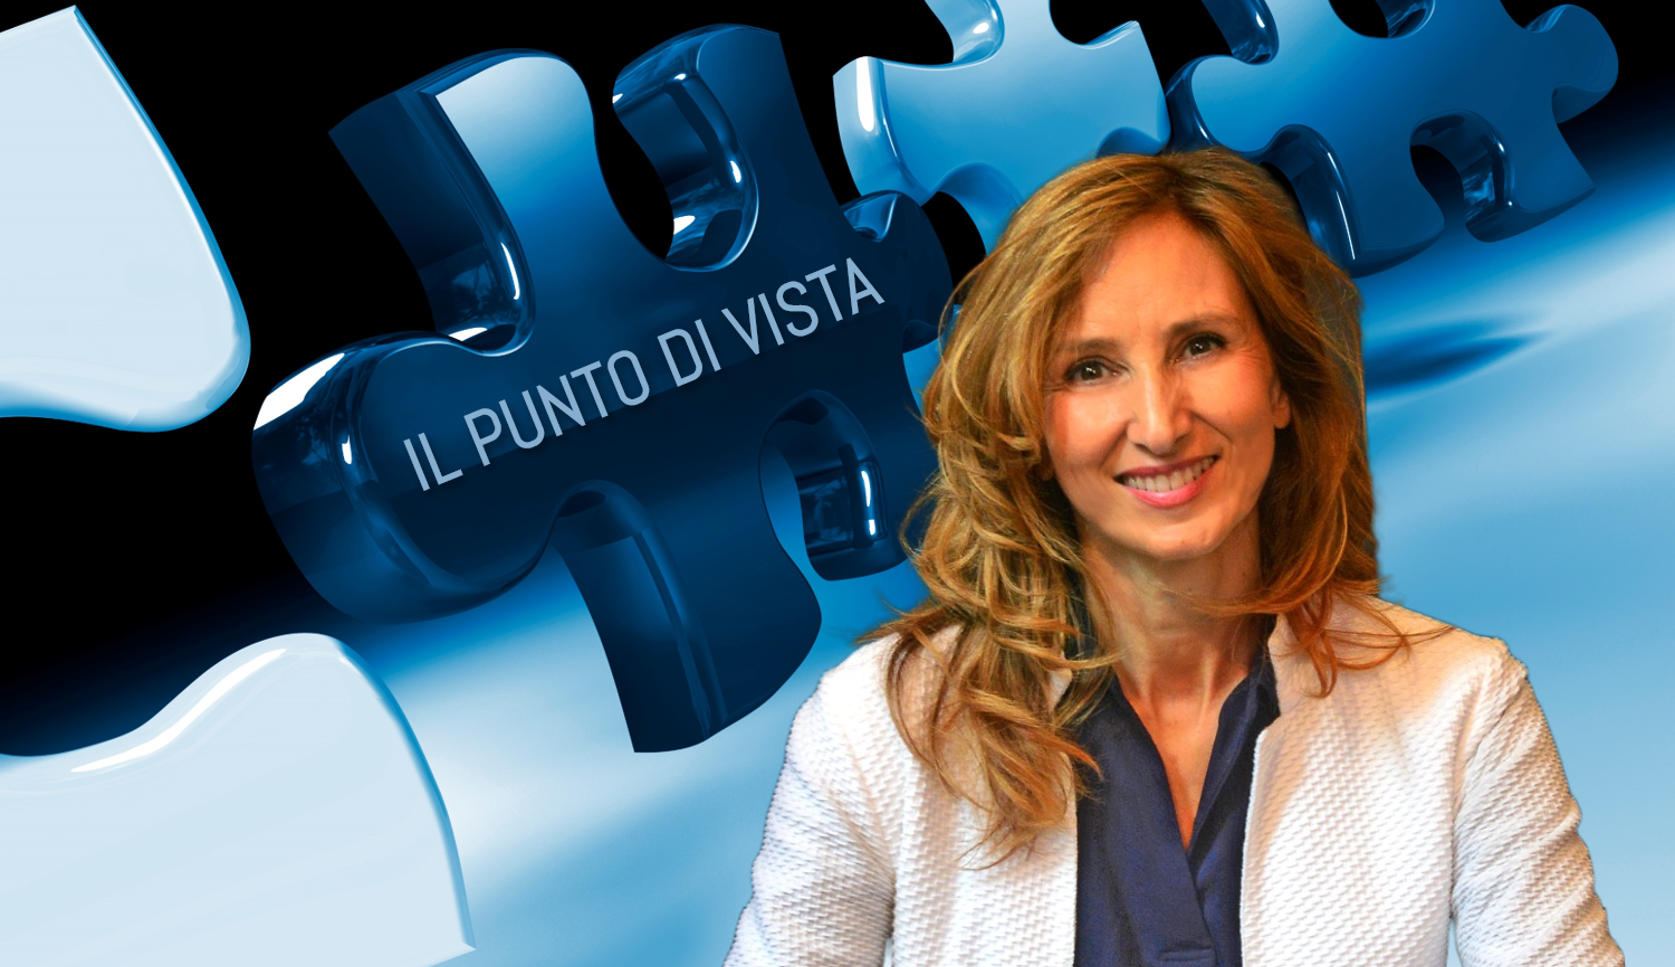 IL PUNTO DI VISTA: Intervista a Elena Berra – IT Service Manager